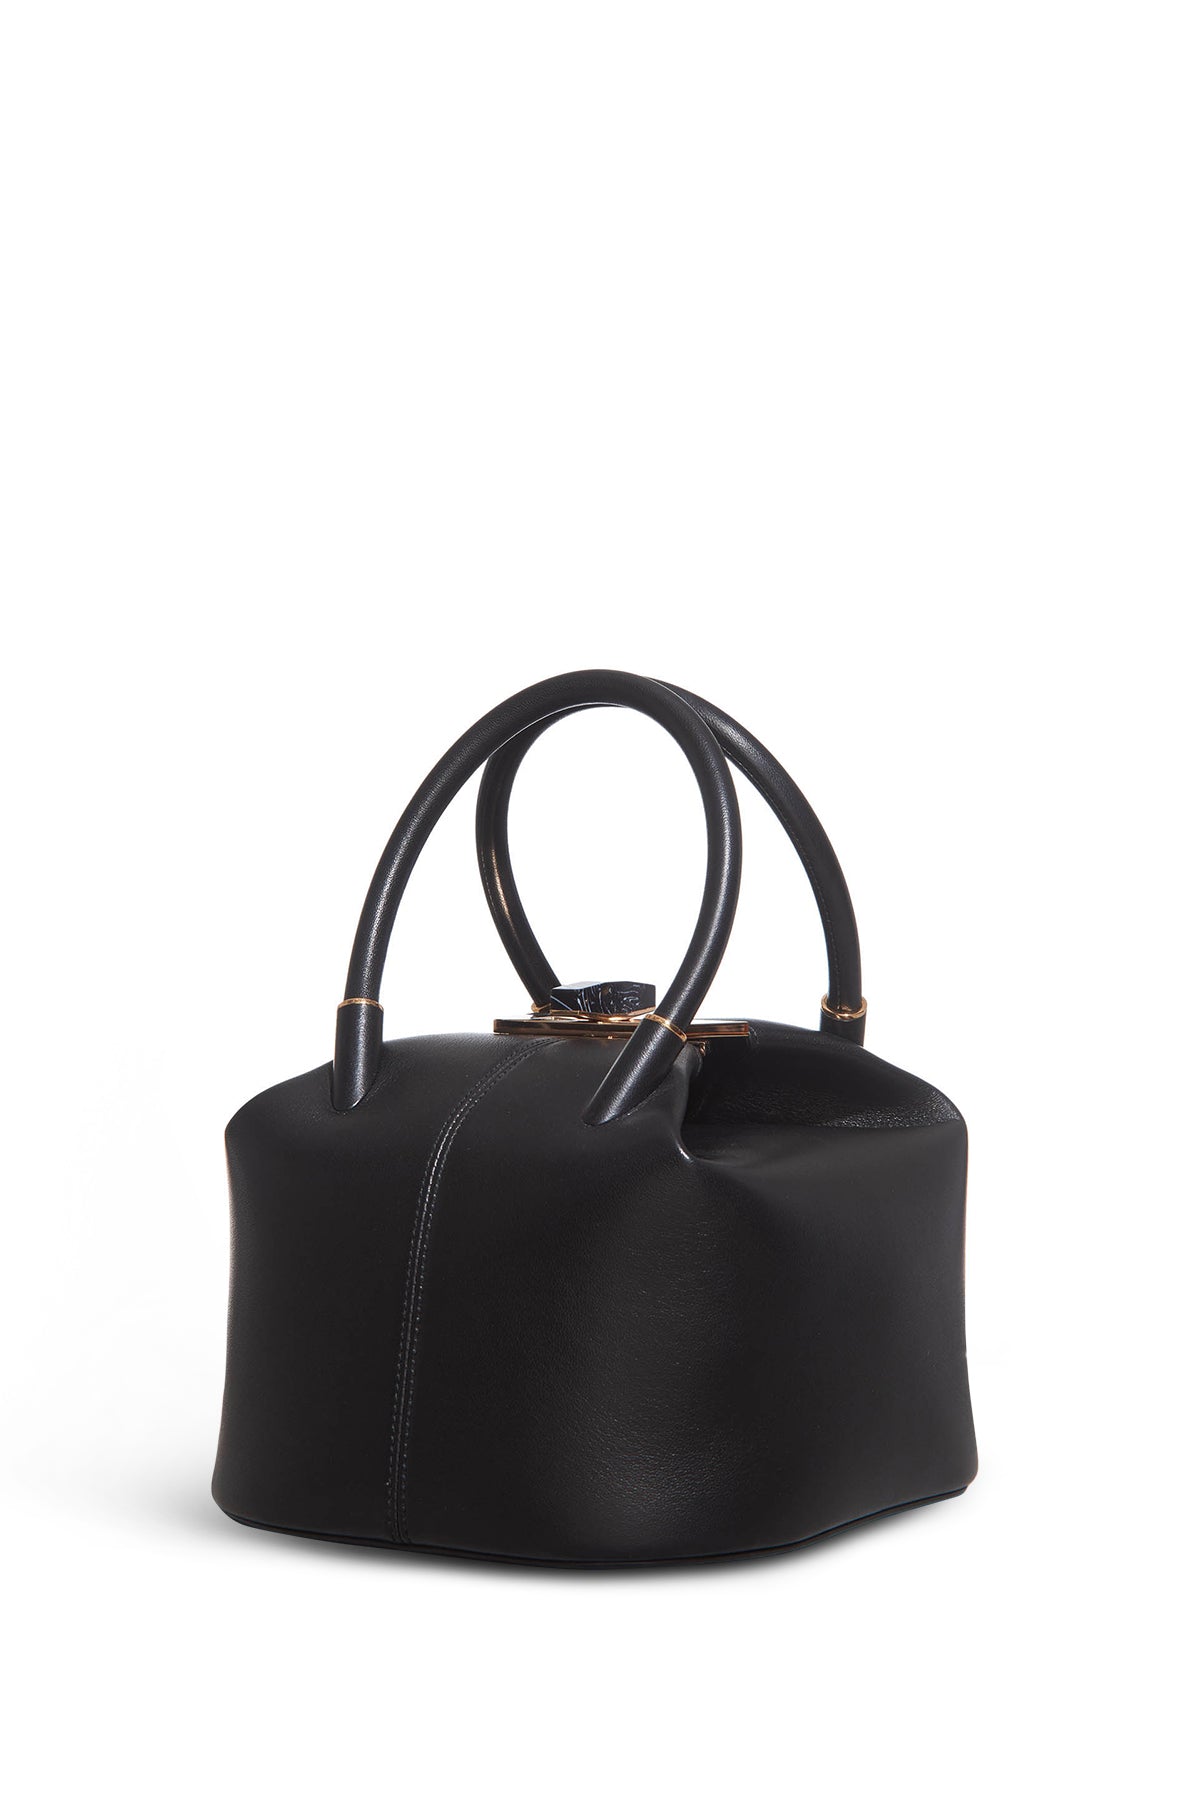 Baez Bag in Black Nappa Leather